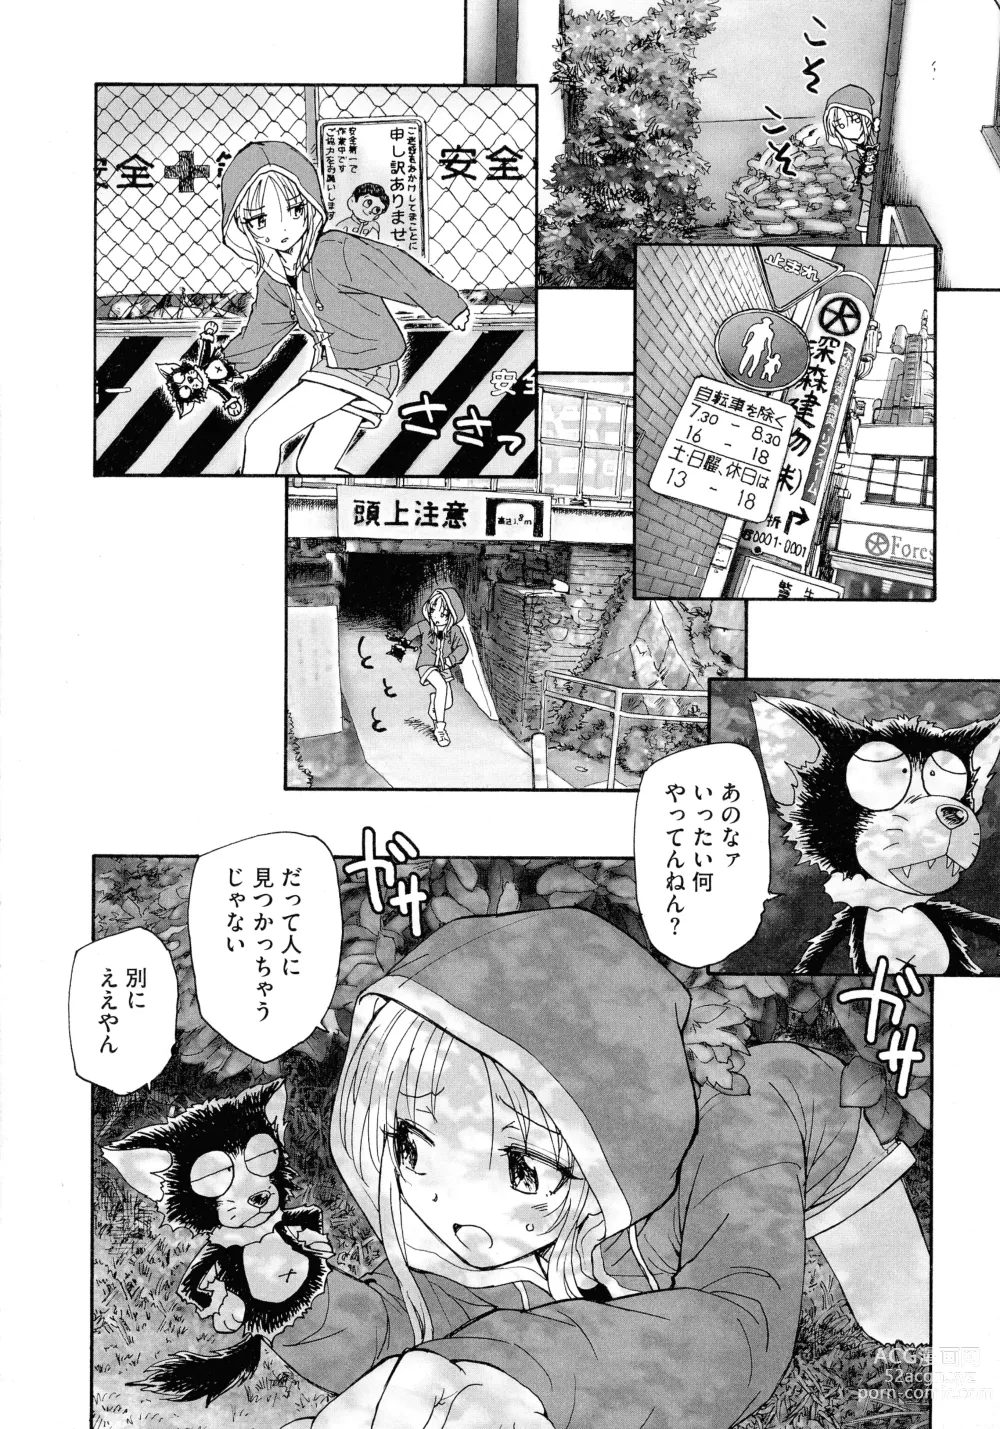 Page 16 of manga Mayoi no Machi no Akazukin Jo